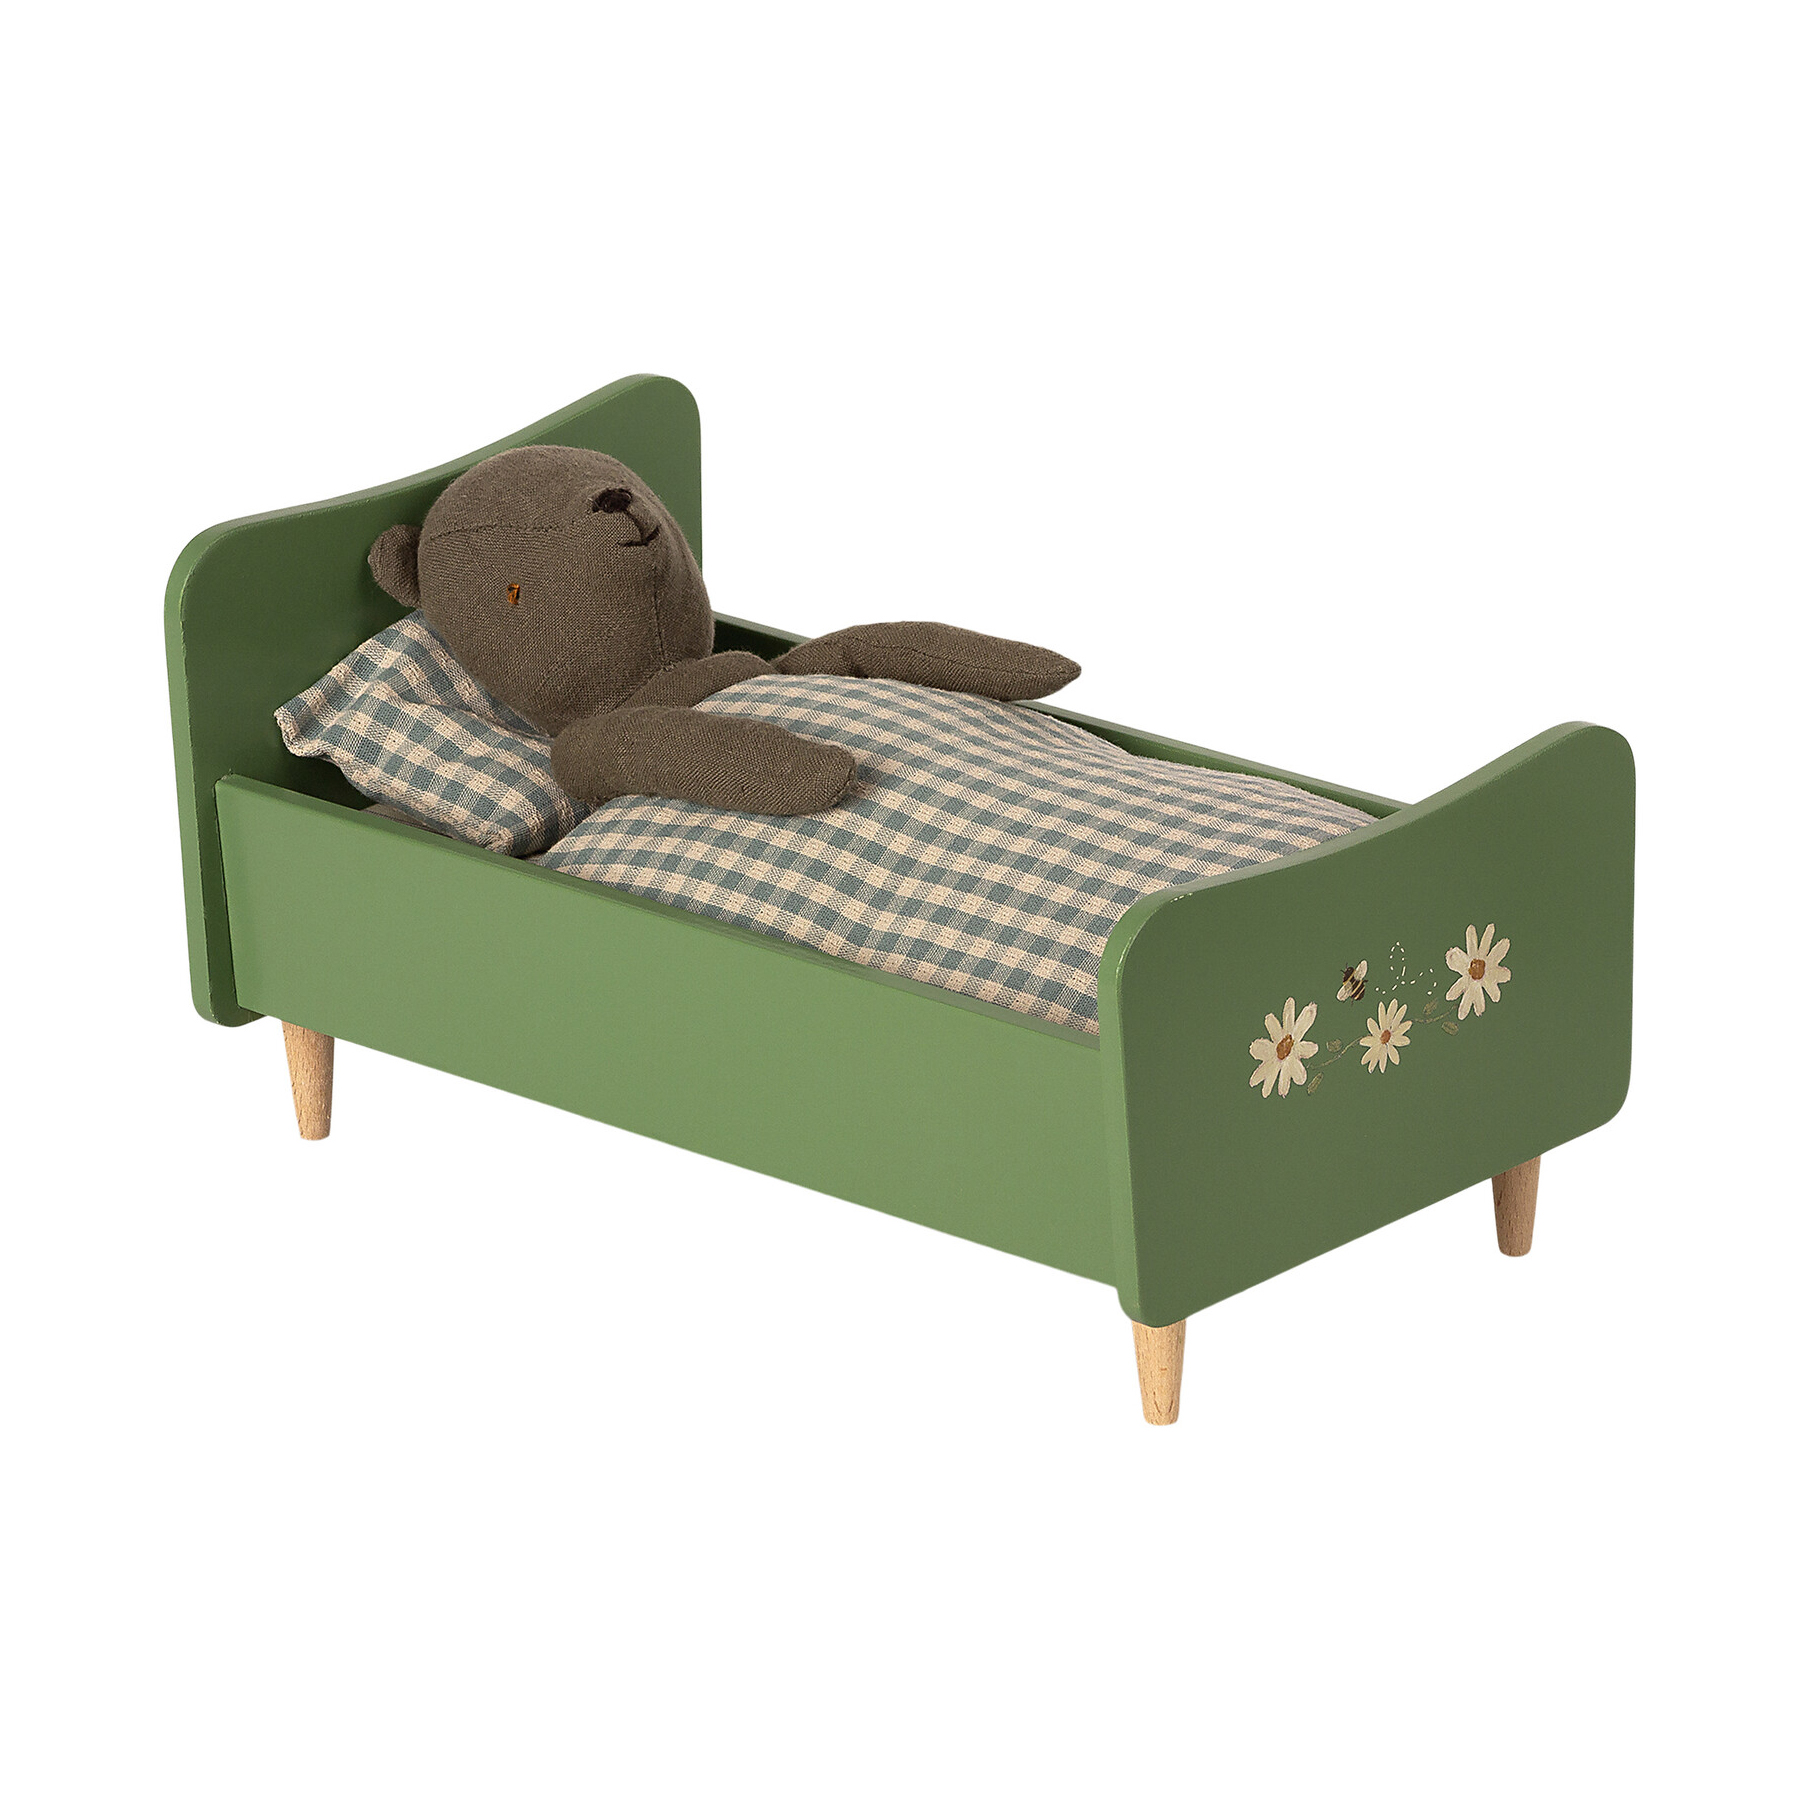 Деревянная кровать для папы Мишки Тедди, зеленая, '21